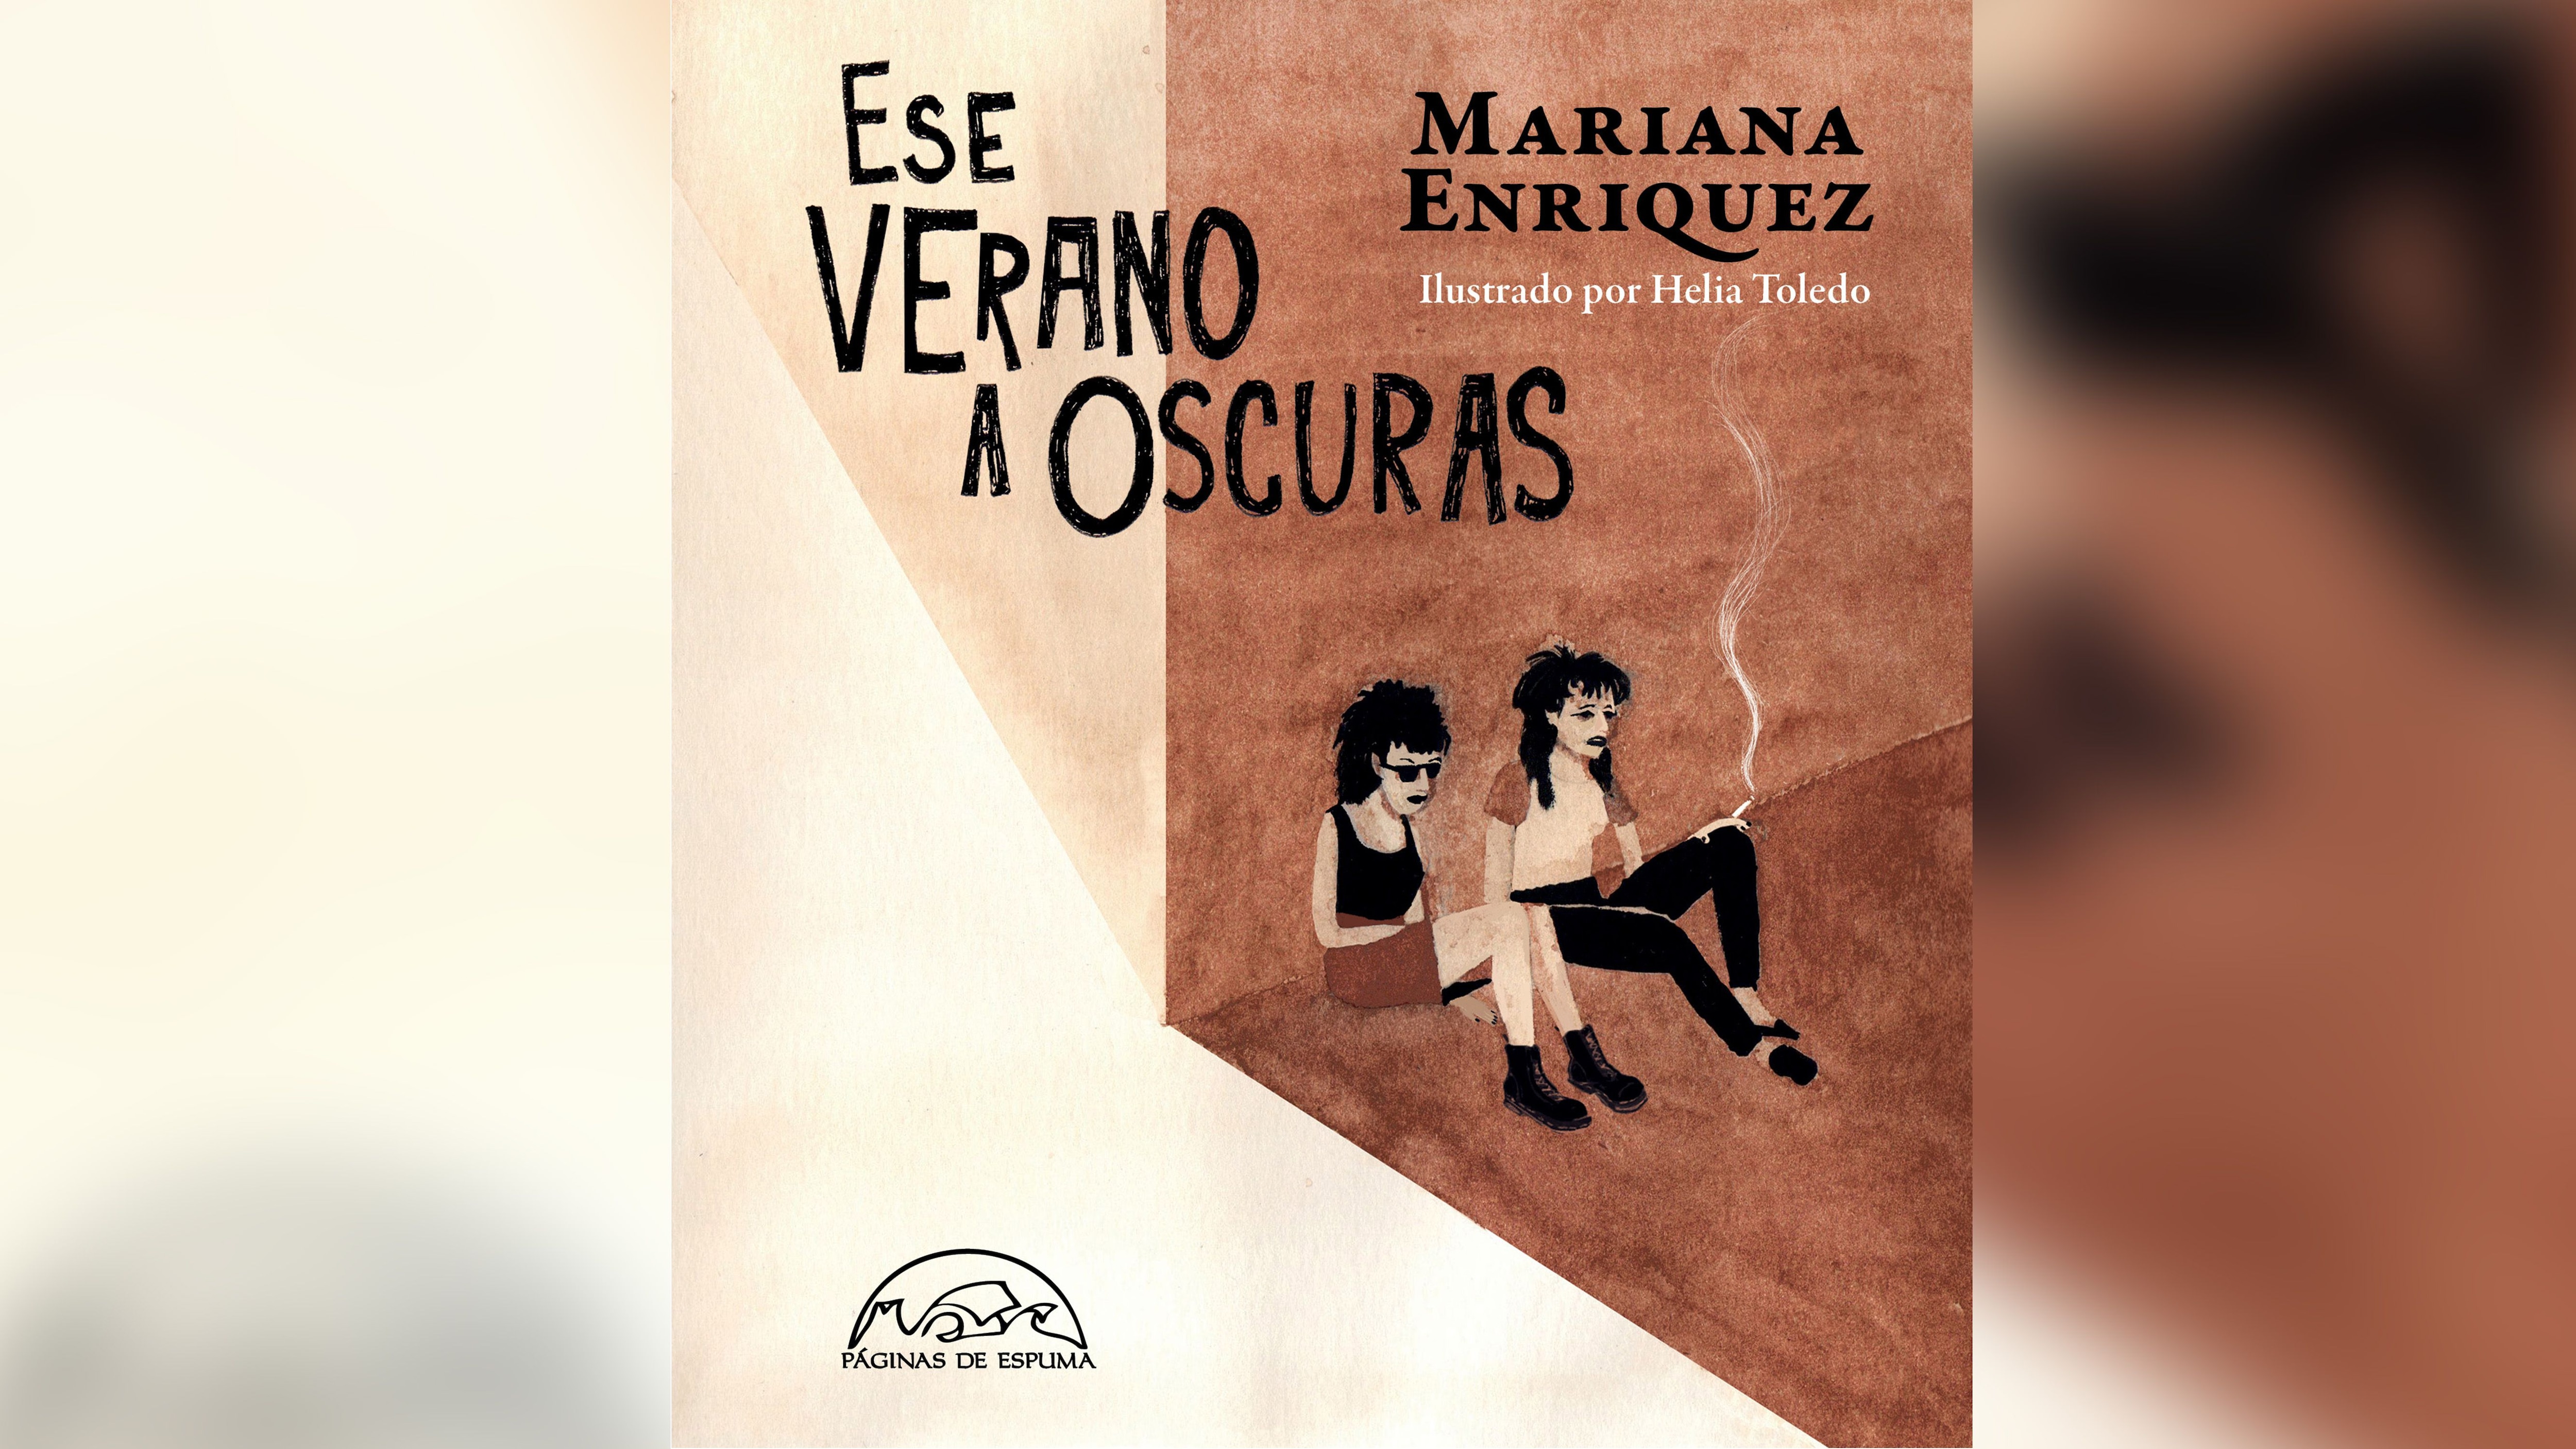 Portada de "Ese verano a oscuras" de Mariana Enriquez con ilustraciones de Helia Toledo